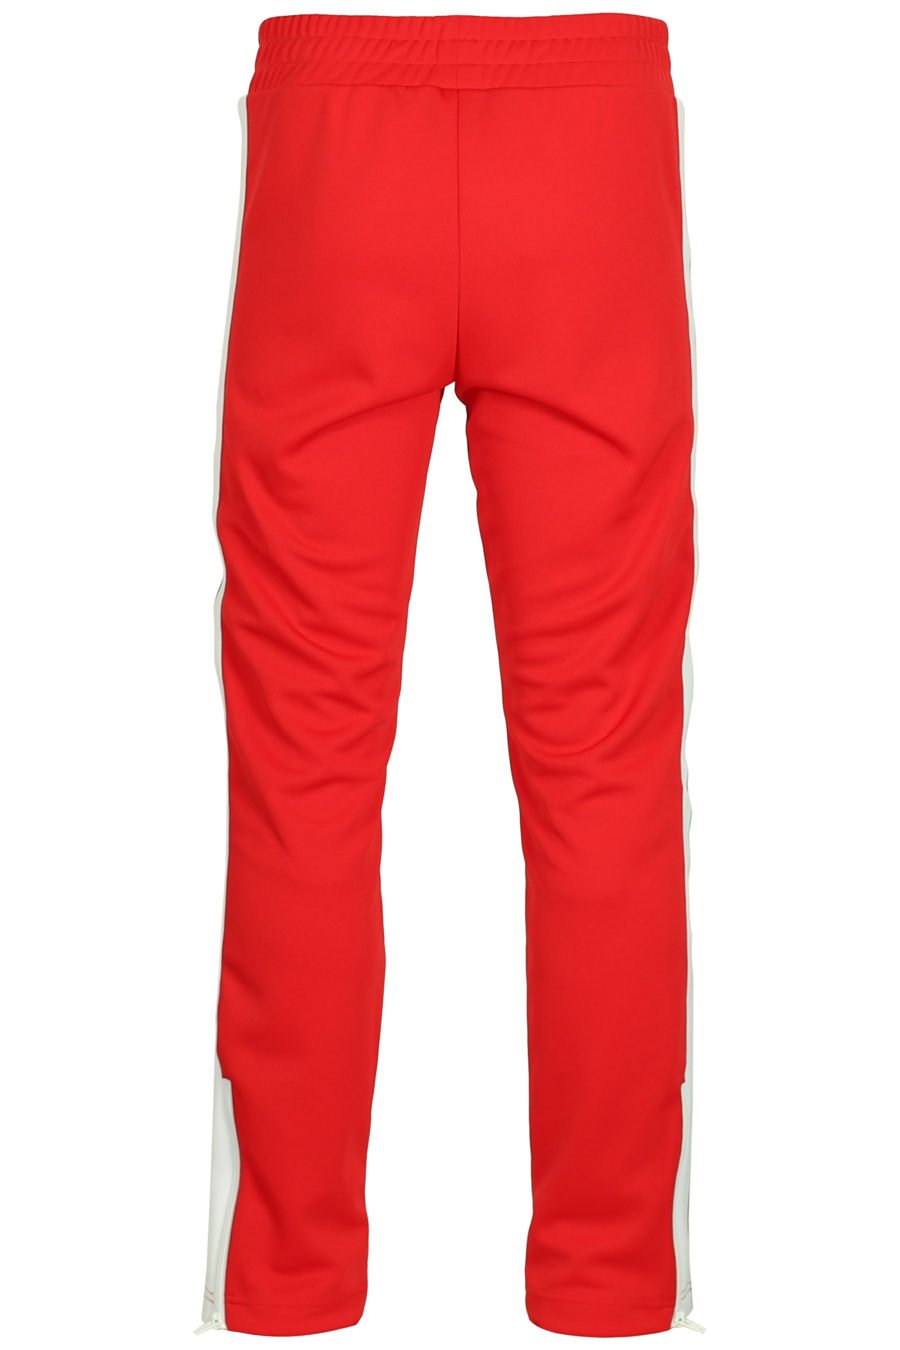 Palm Angels - Rote Hose mit Logo und Seitenstreifen - BLS Fashion